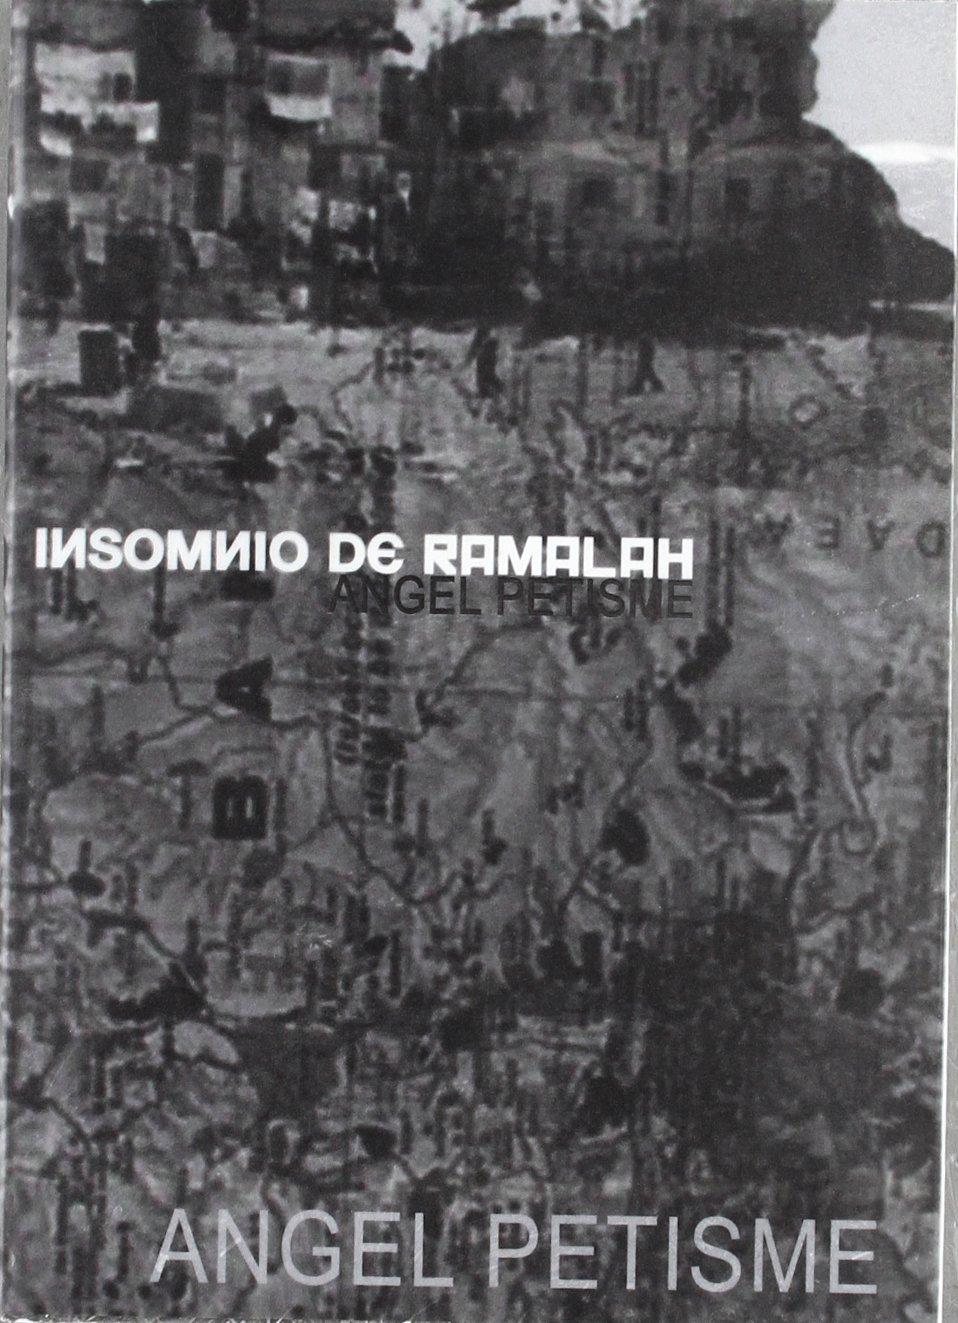 INSOMNIO DE RAMALAH : POEMAS PALESTINOS